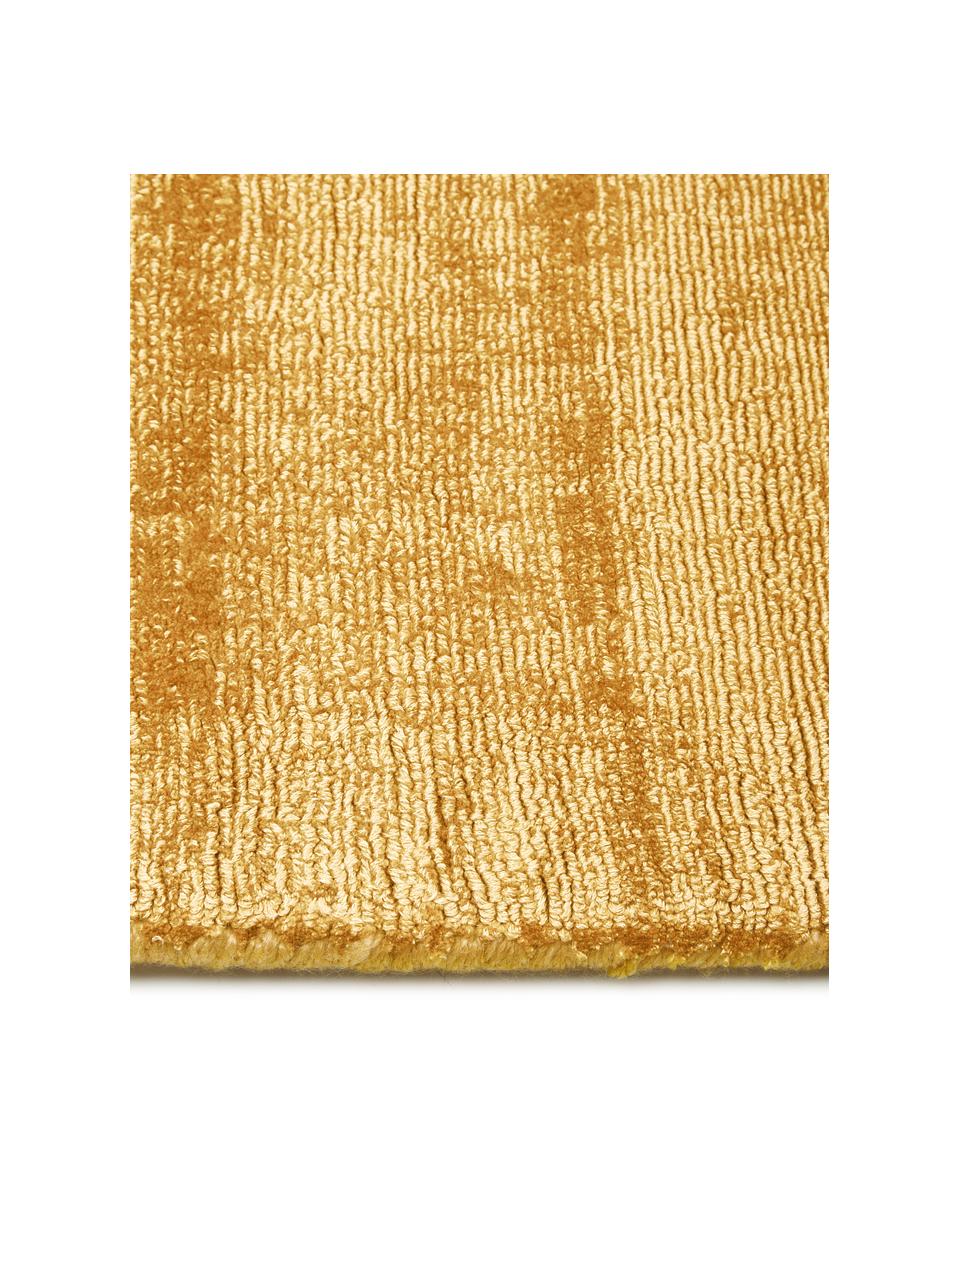 Tappeto in viscosa color giallo senape tessuto a mano Jane, Retro: 100% cotone, Giallo senape, Larg. 80 x Lung. 150 cm (taglia XS)